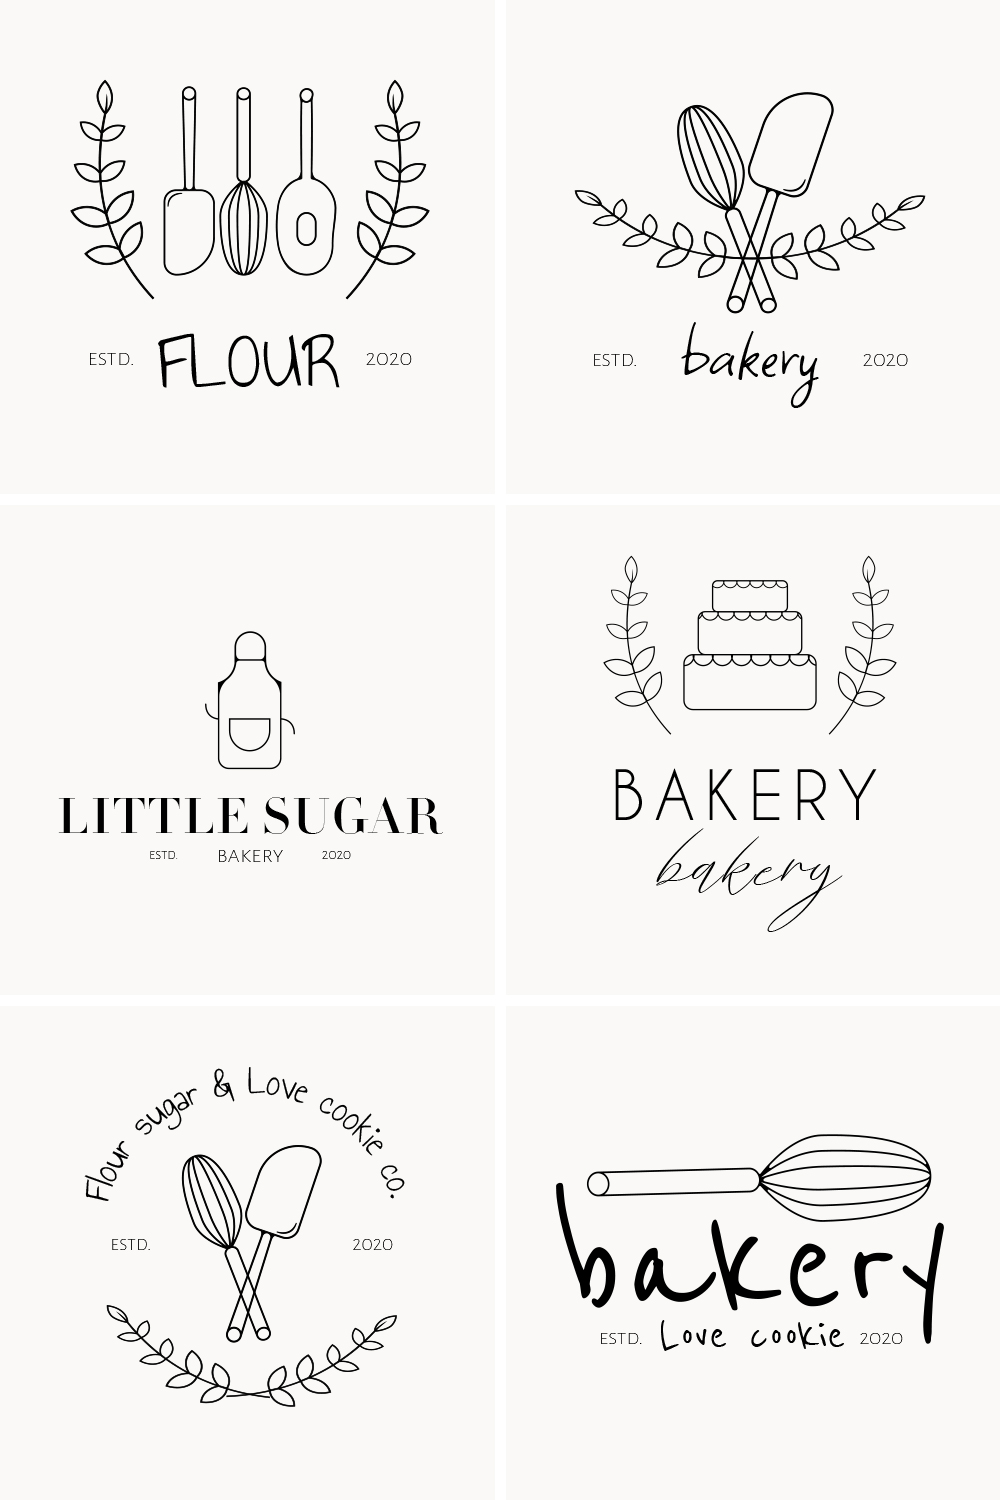 Nice various of bakery logos.